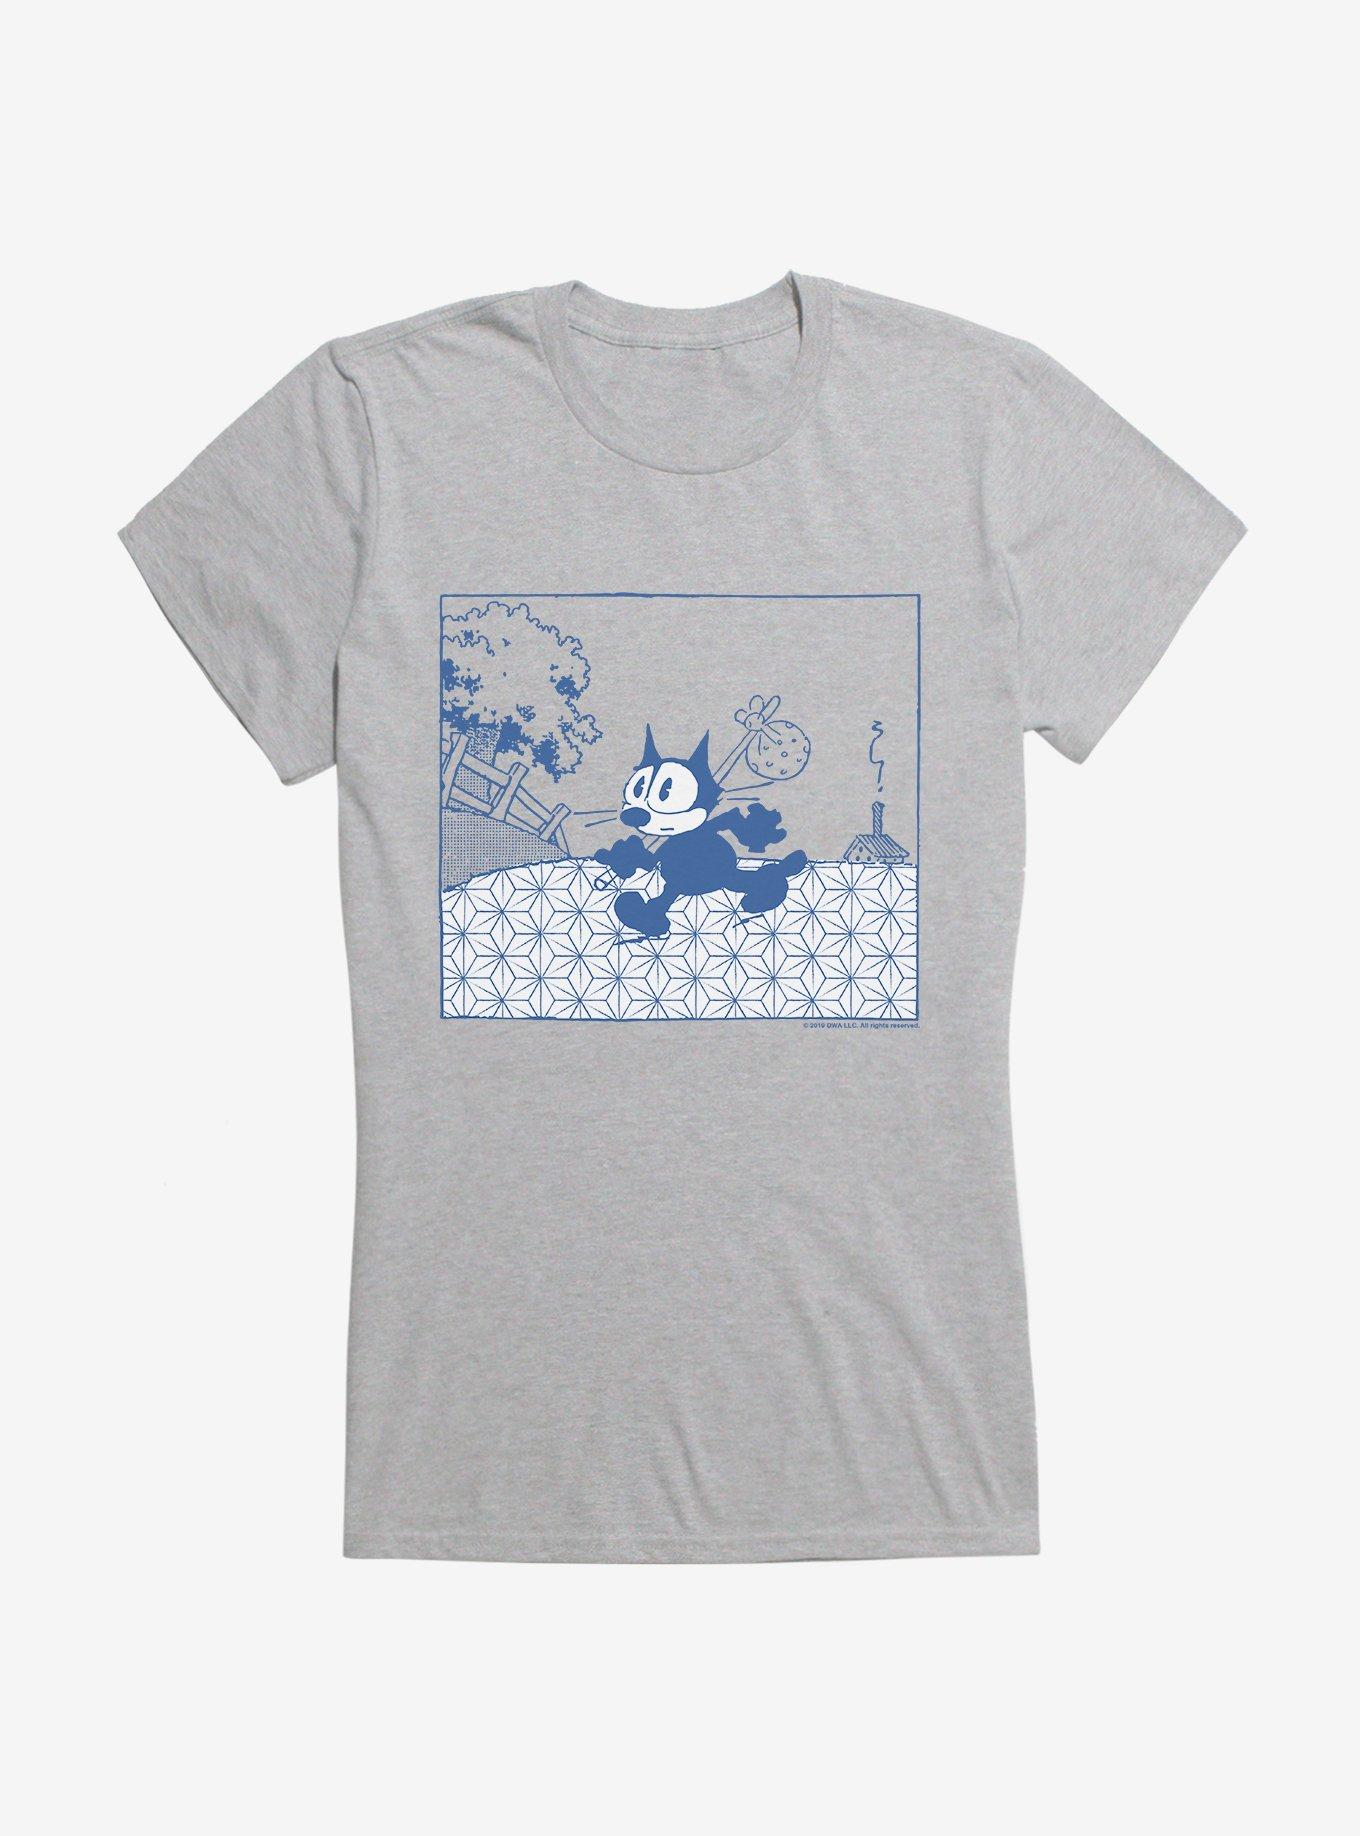 Felix The Cat Running Away Girls T-Shirt | Hot Topic